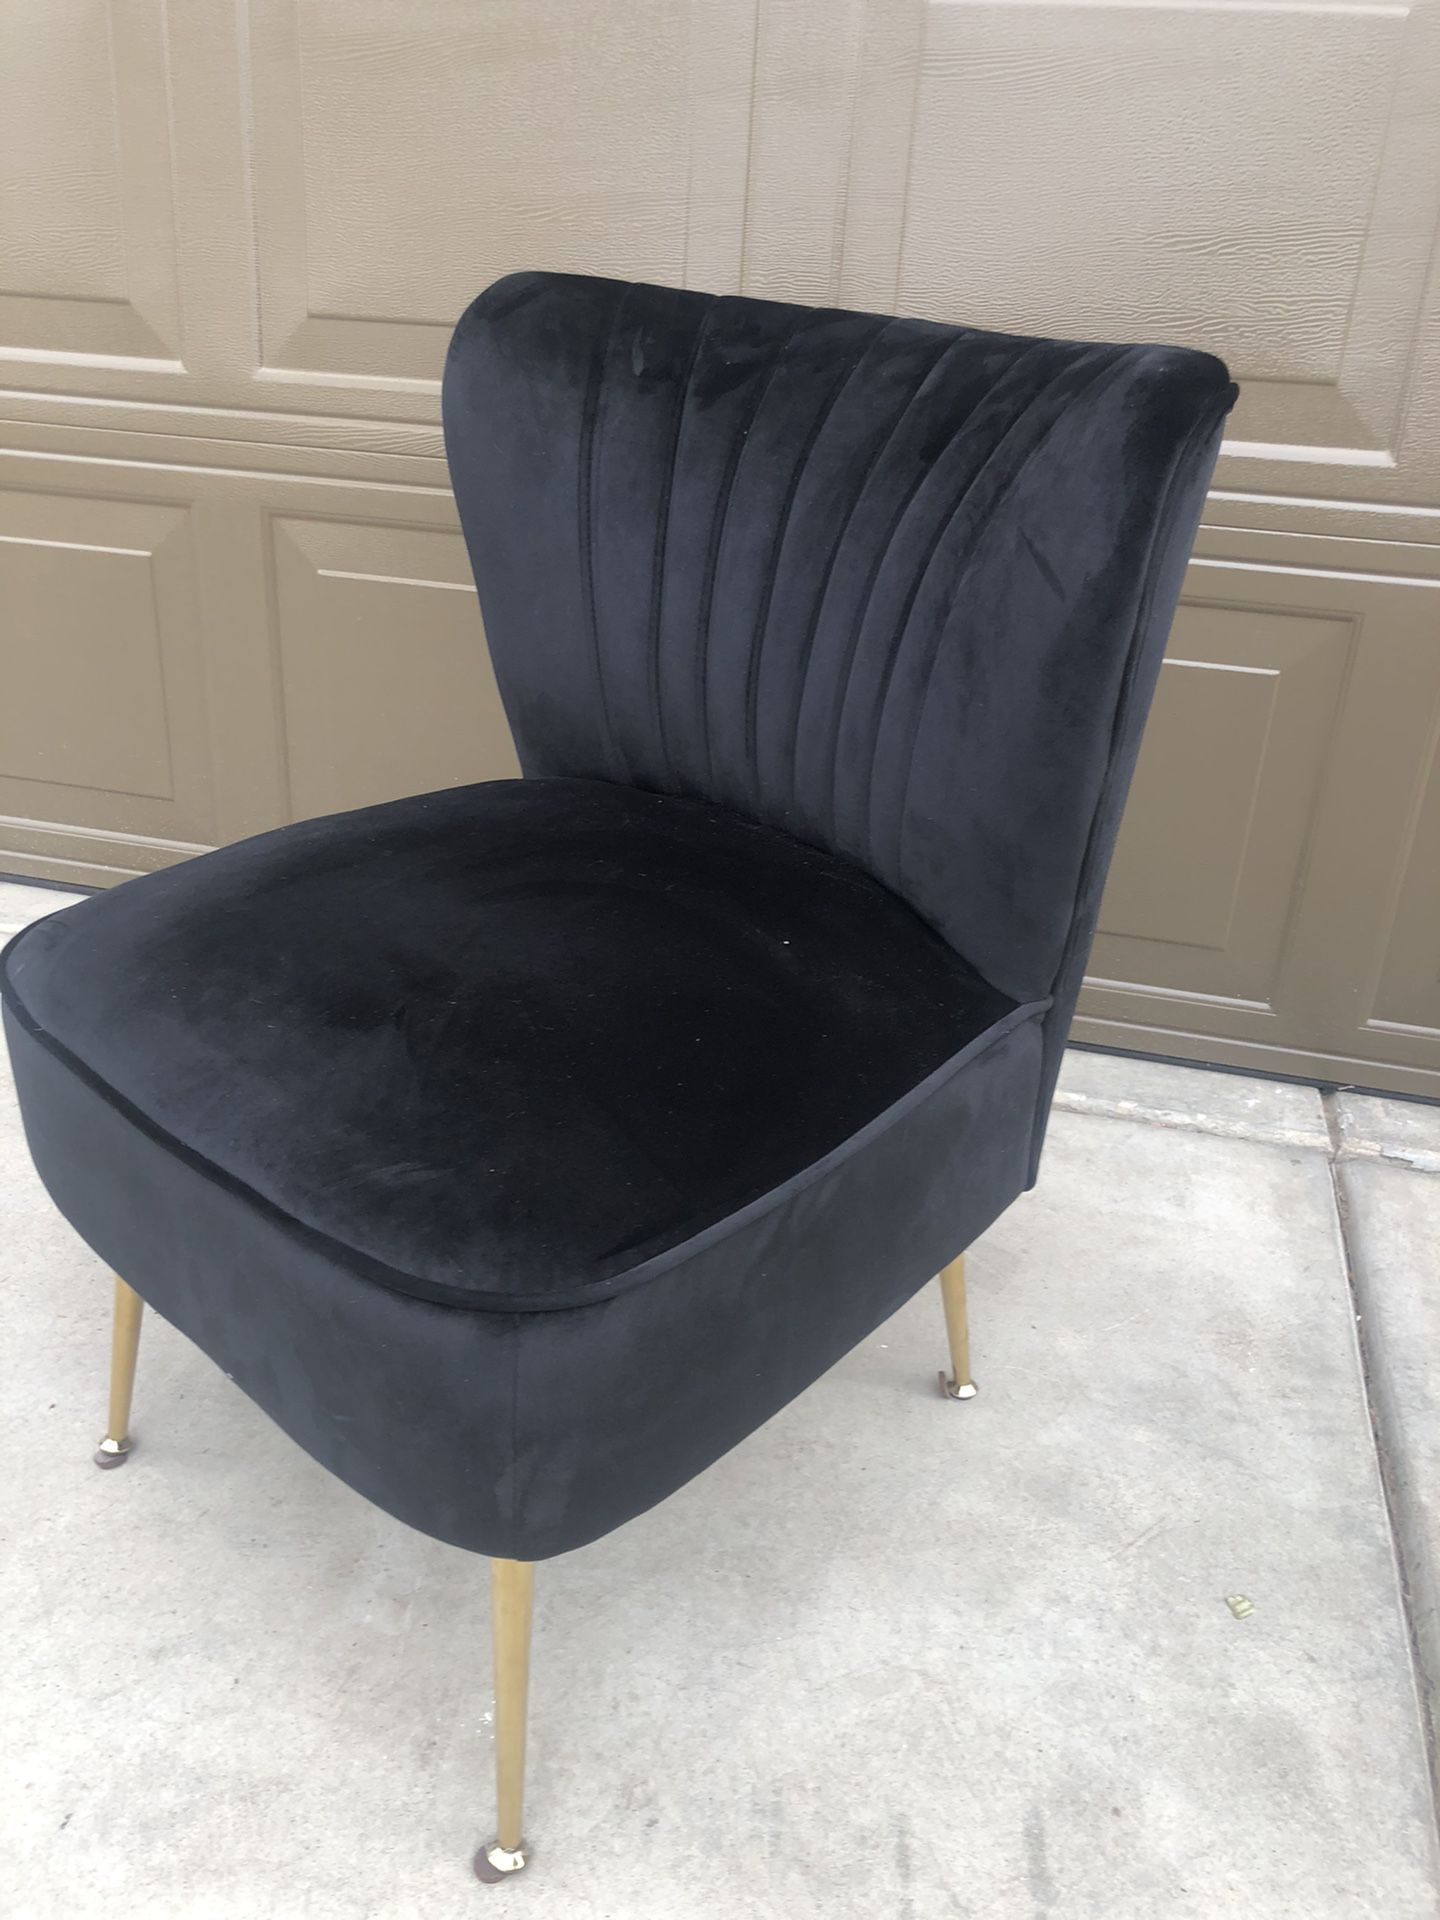 Brand New Black Velvet Vanity Chair, Retails For Over $300